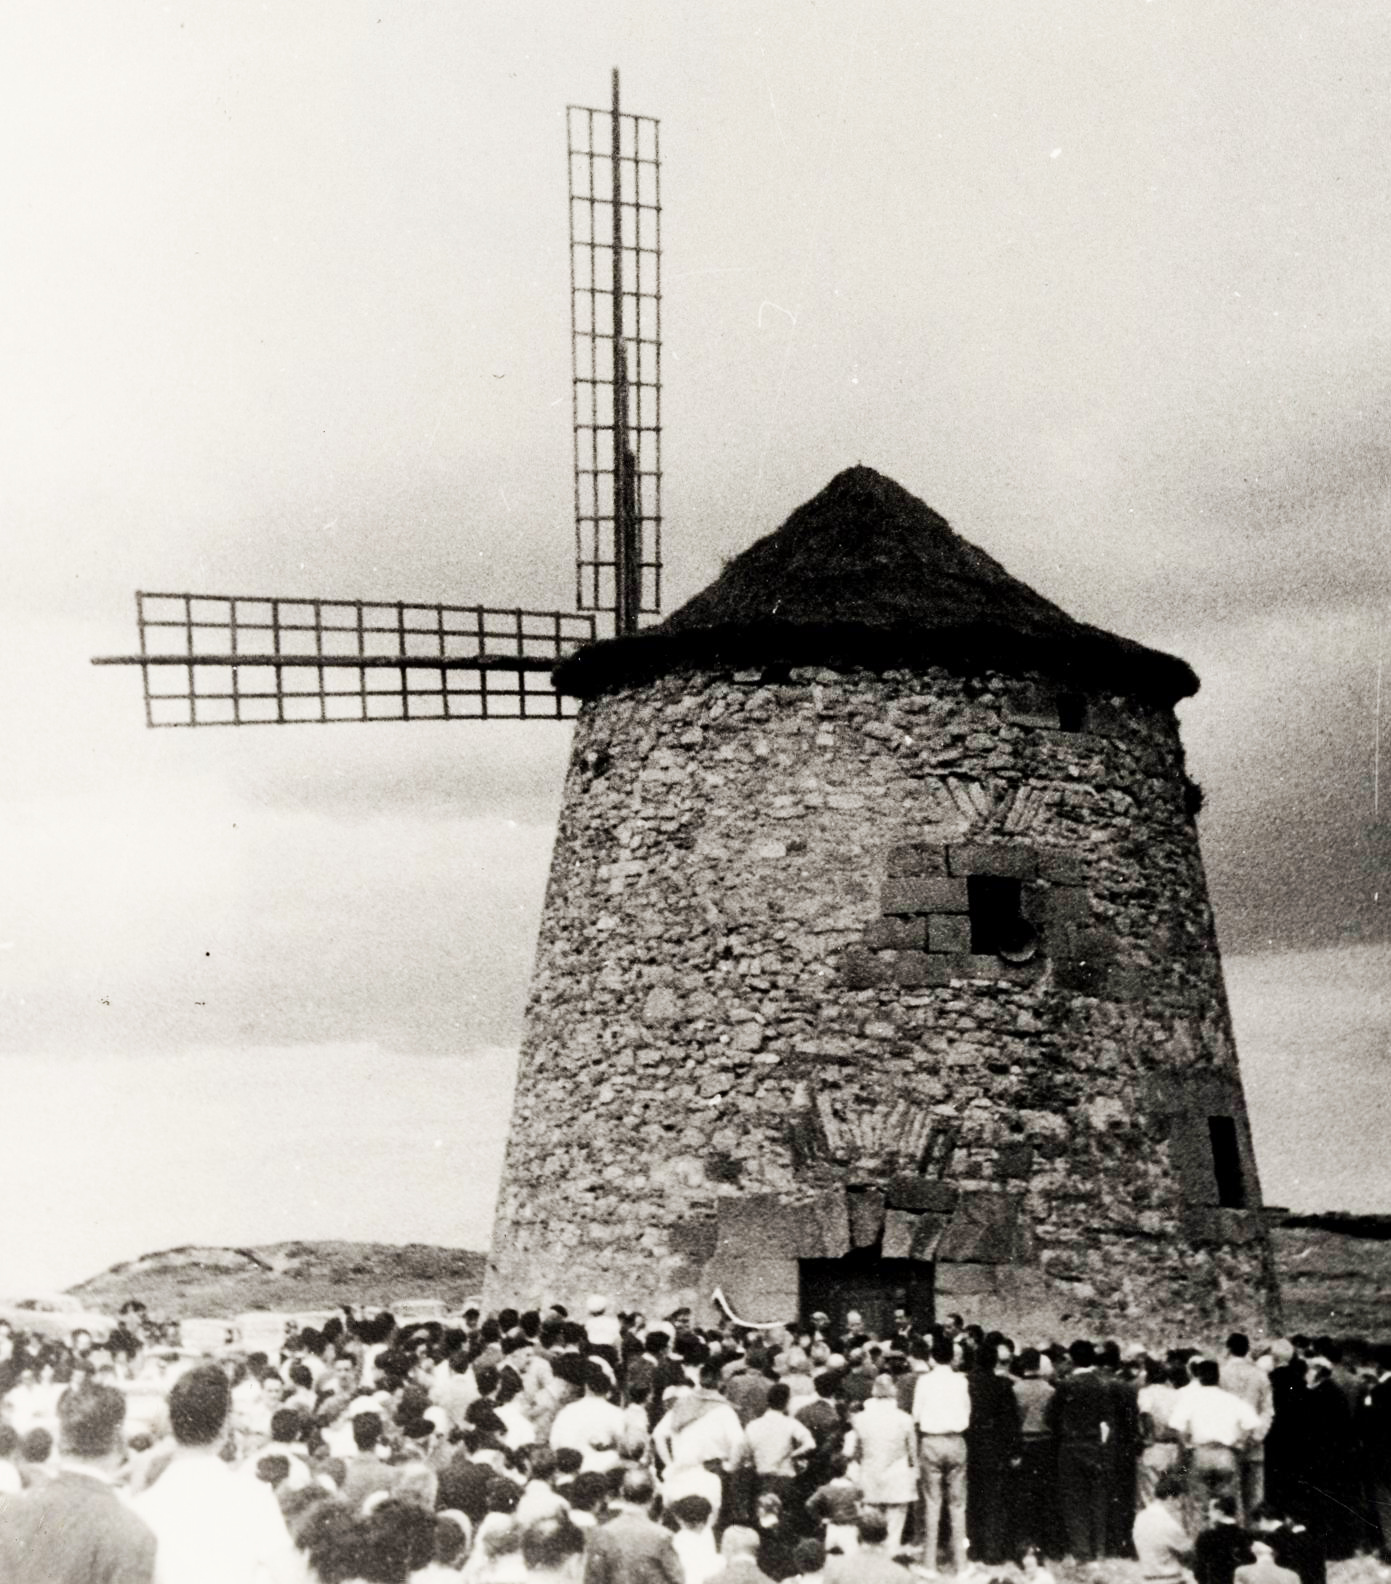 Aixerrota Windmill in Getxo (Bizkaia). Courtesy of Getxo Council